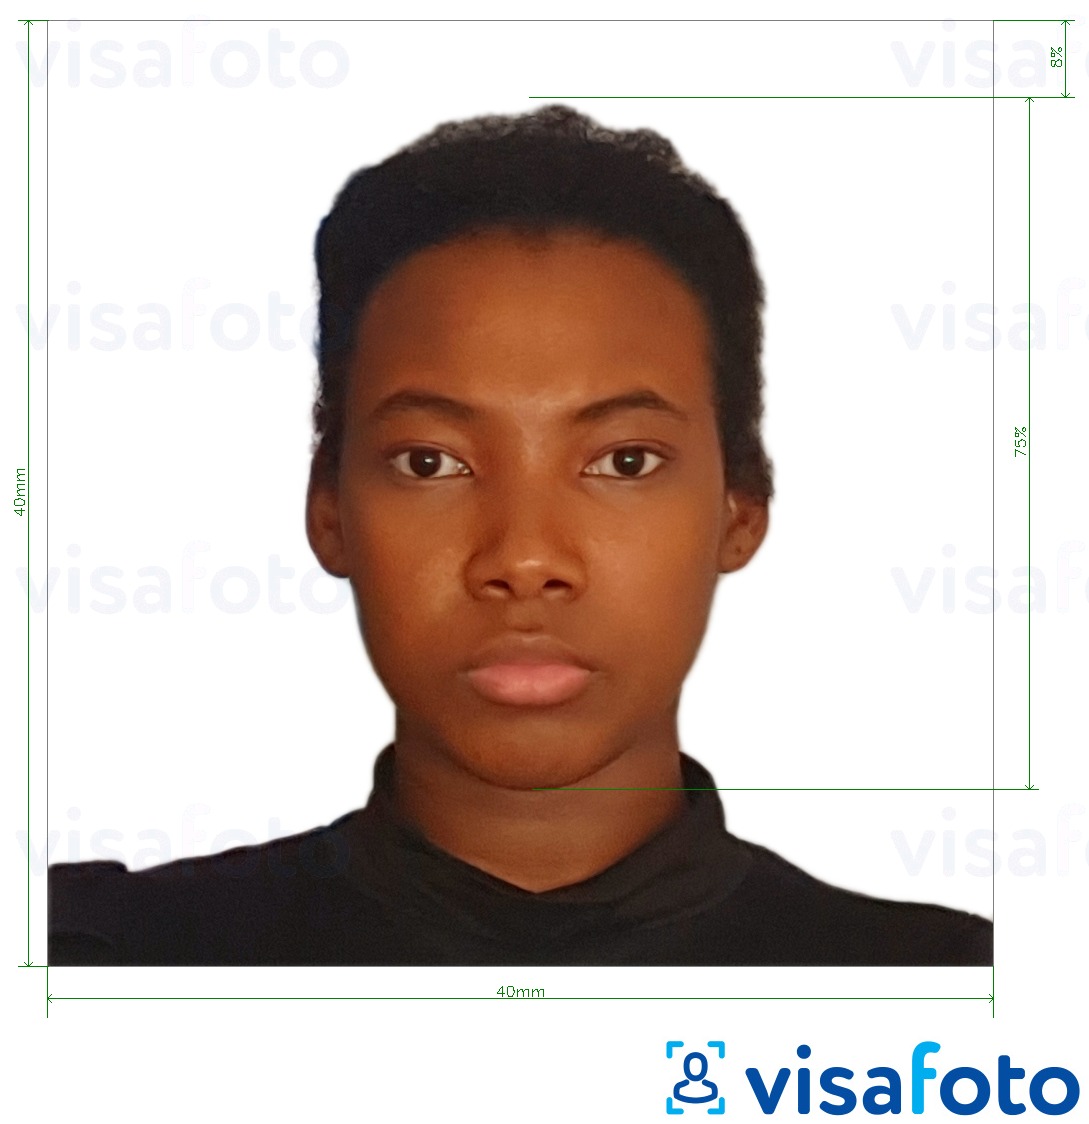 Contoh dari foto untuk Visa Kamerun 4x4 cm (40x40 mm) dengan ukuran spesifikasi yang tepat